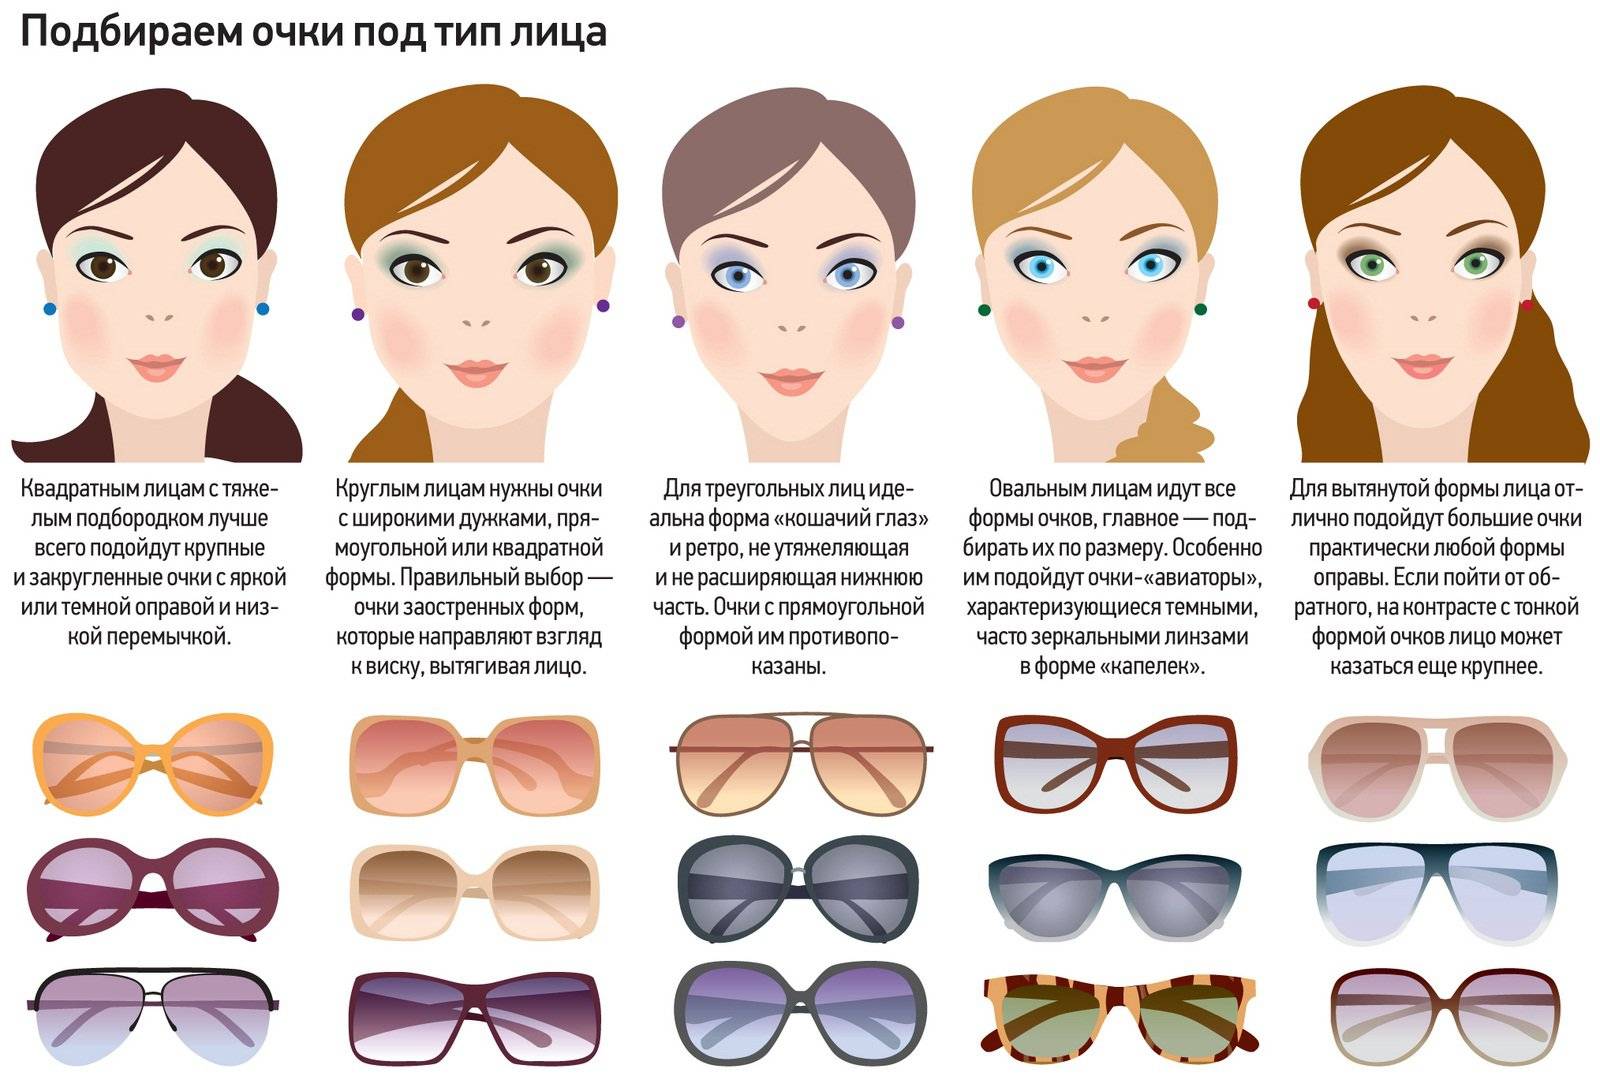 Как выбрать солнцезащитные очки, подобрать по степени защиты, типу, цвету, качественные женщине и мужчине